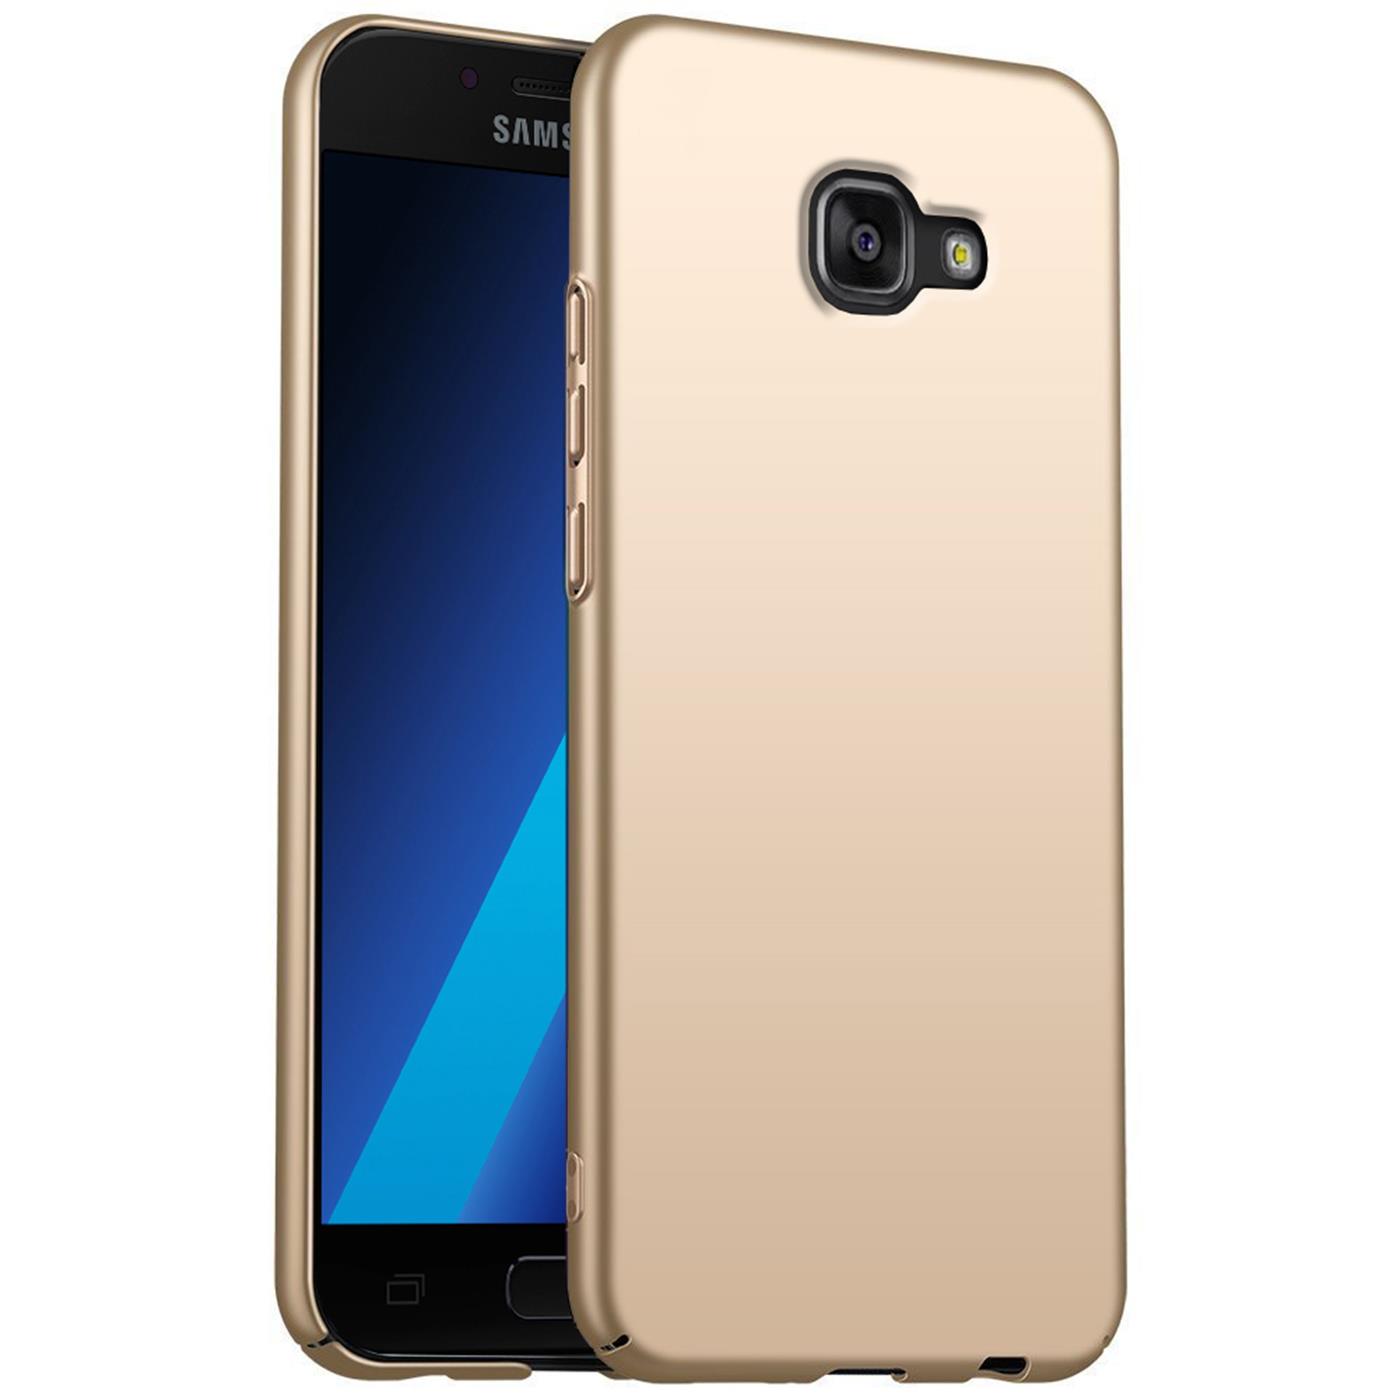 Handy Hardcase für Samsung Galaxy A5 2016 Hülle Slim Cover Matt Case Schutzhülle